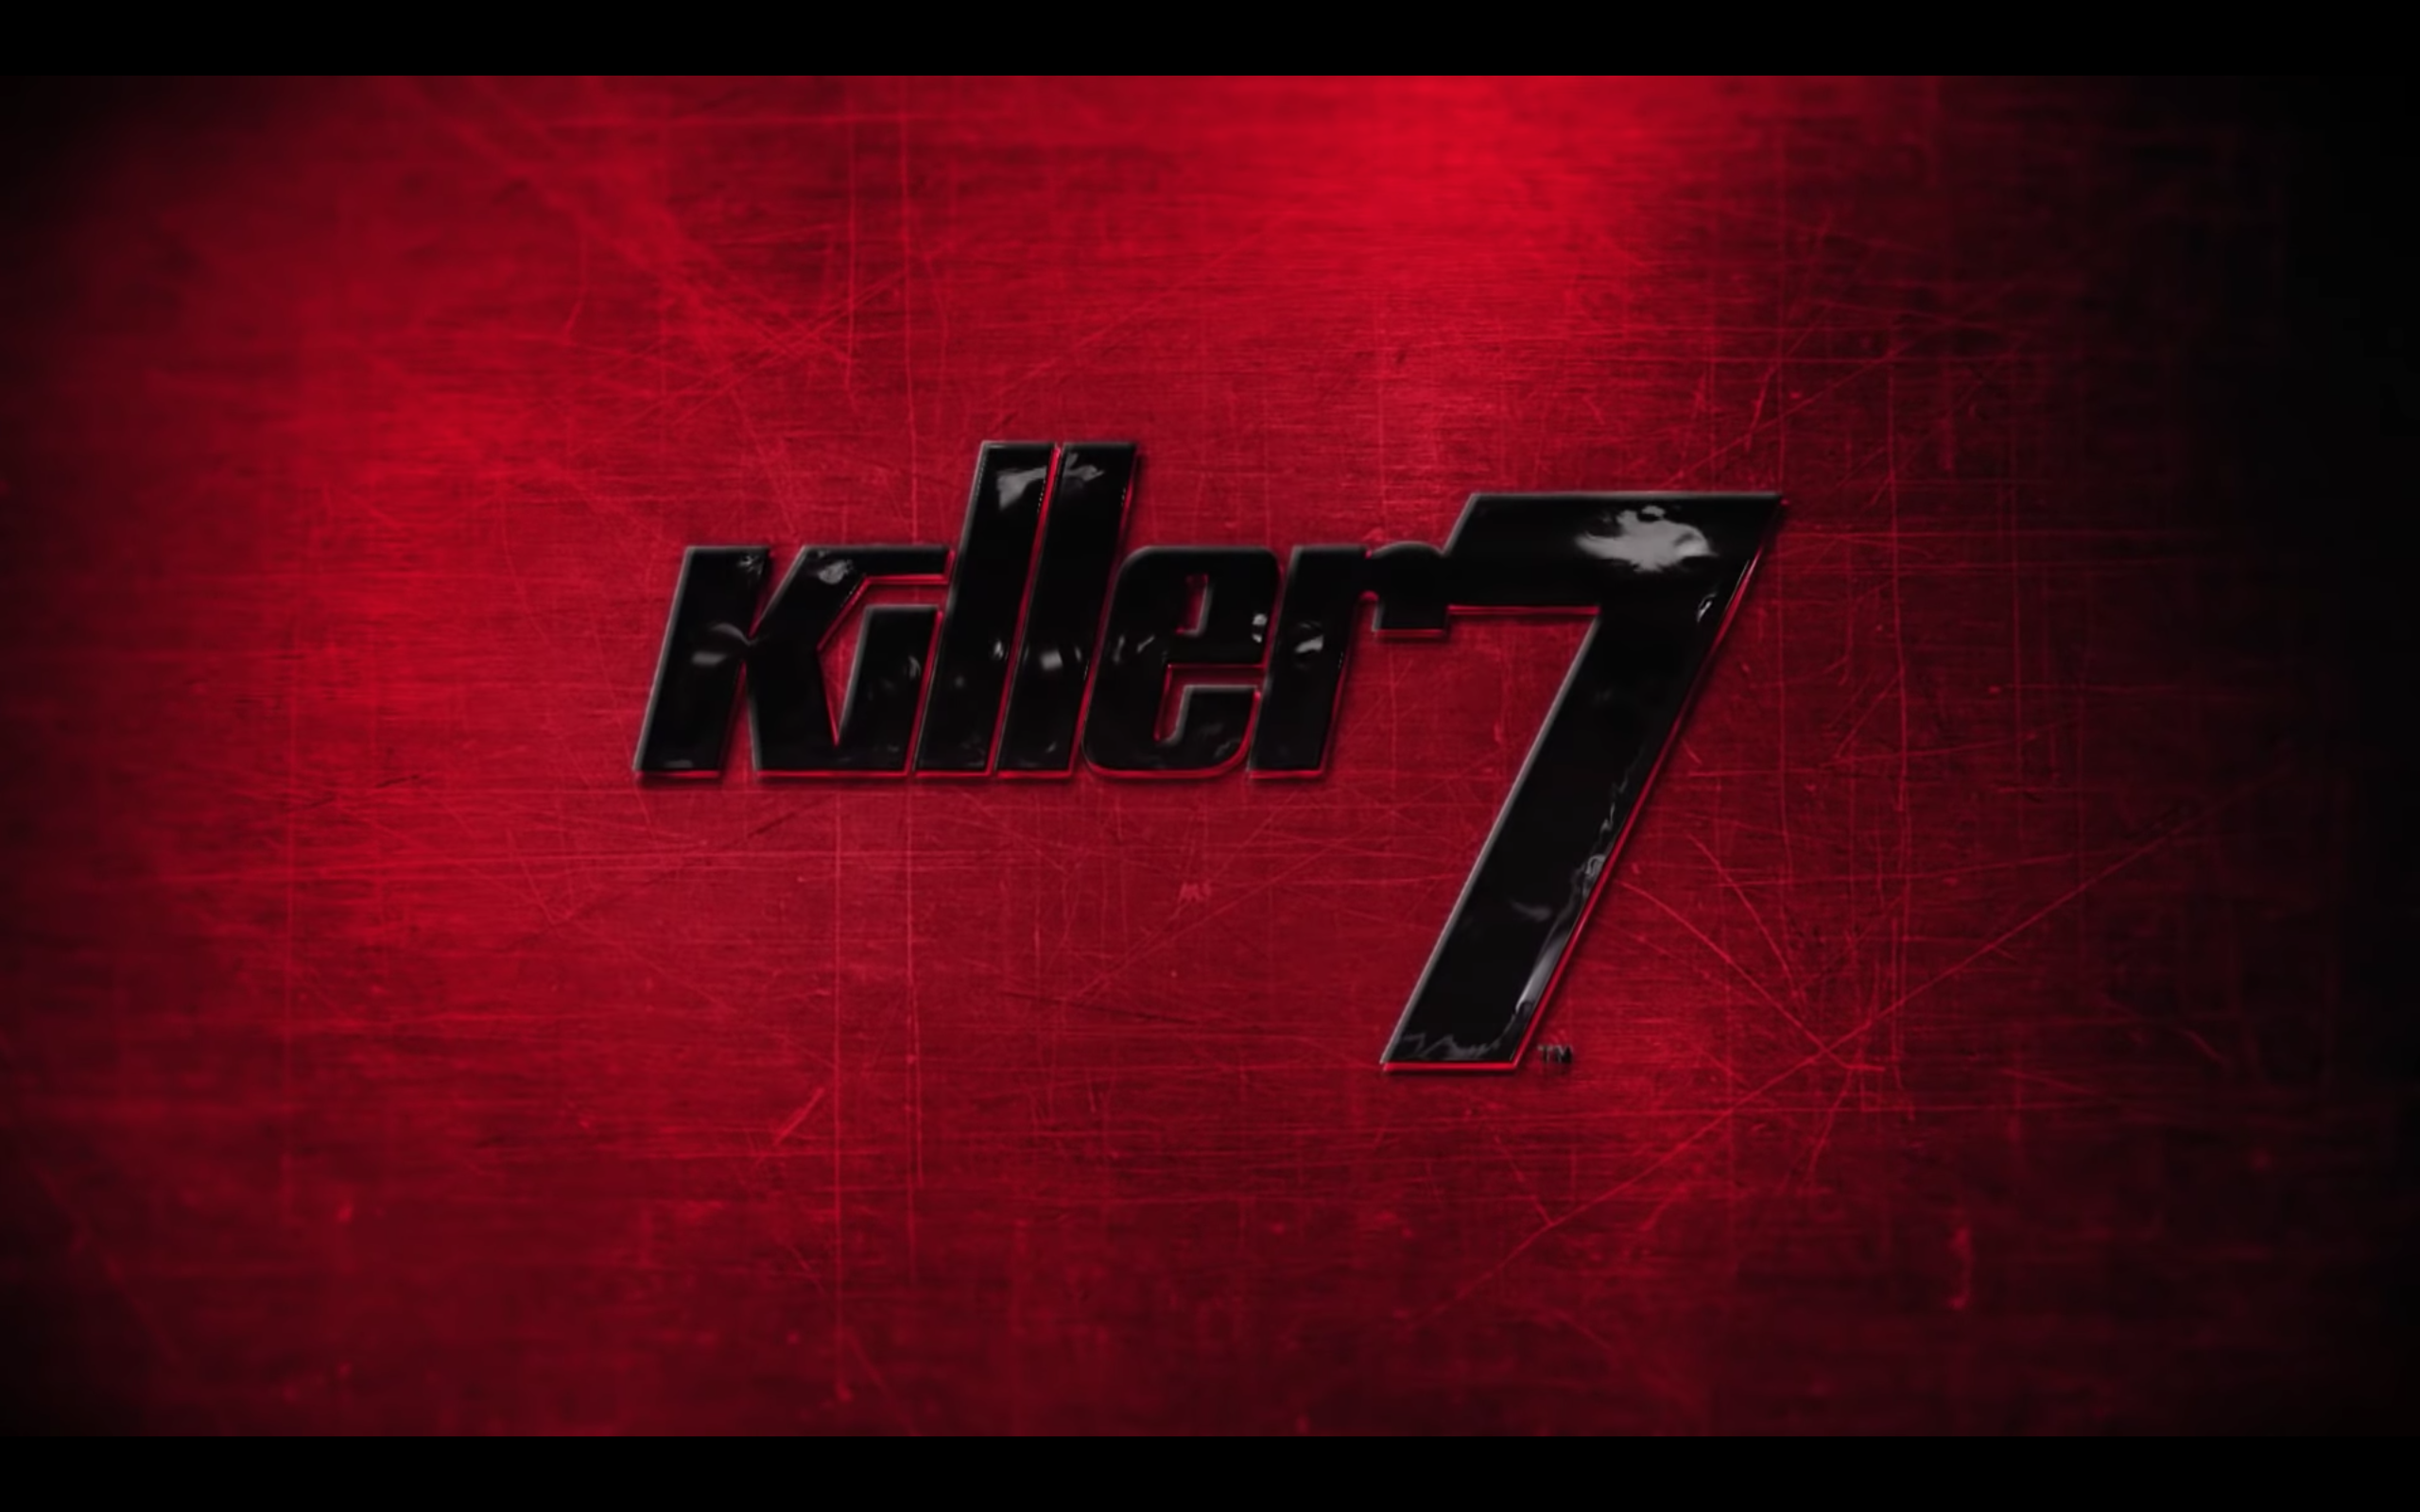 قاتل 7 کا ریماسٹر اس موسم خزاں میں پی سی پر آرہا ہے